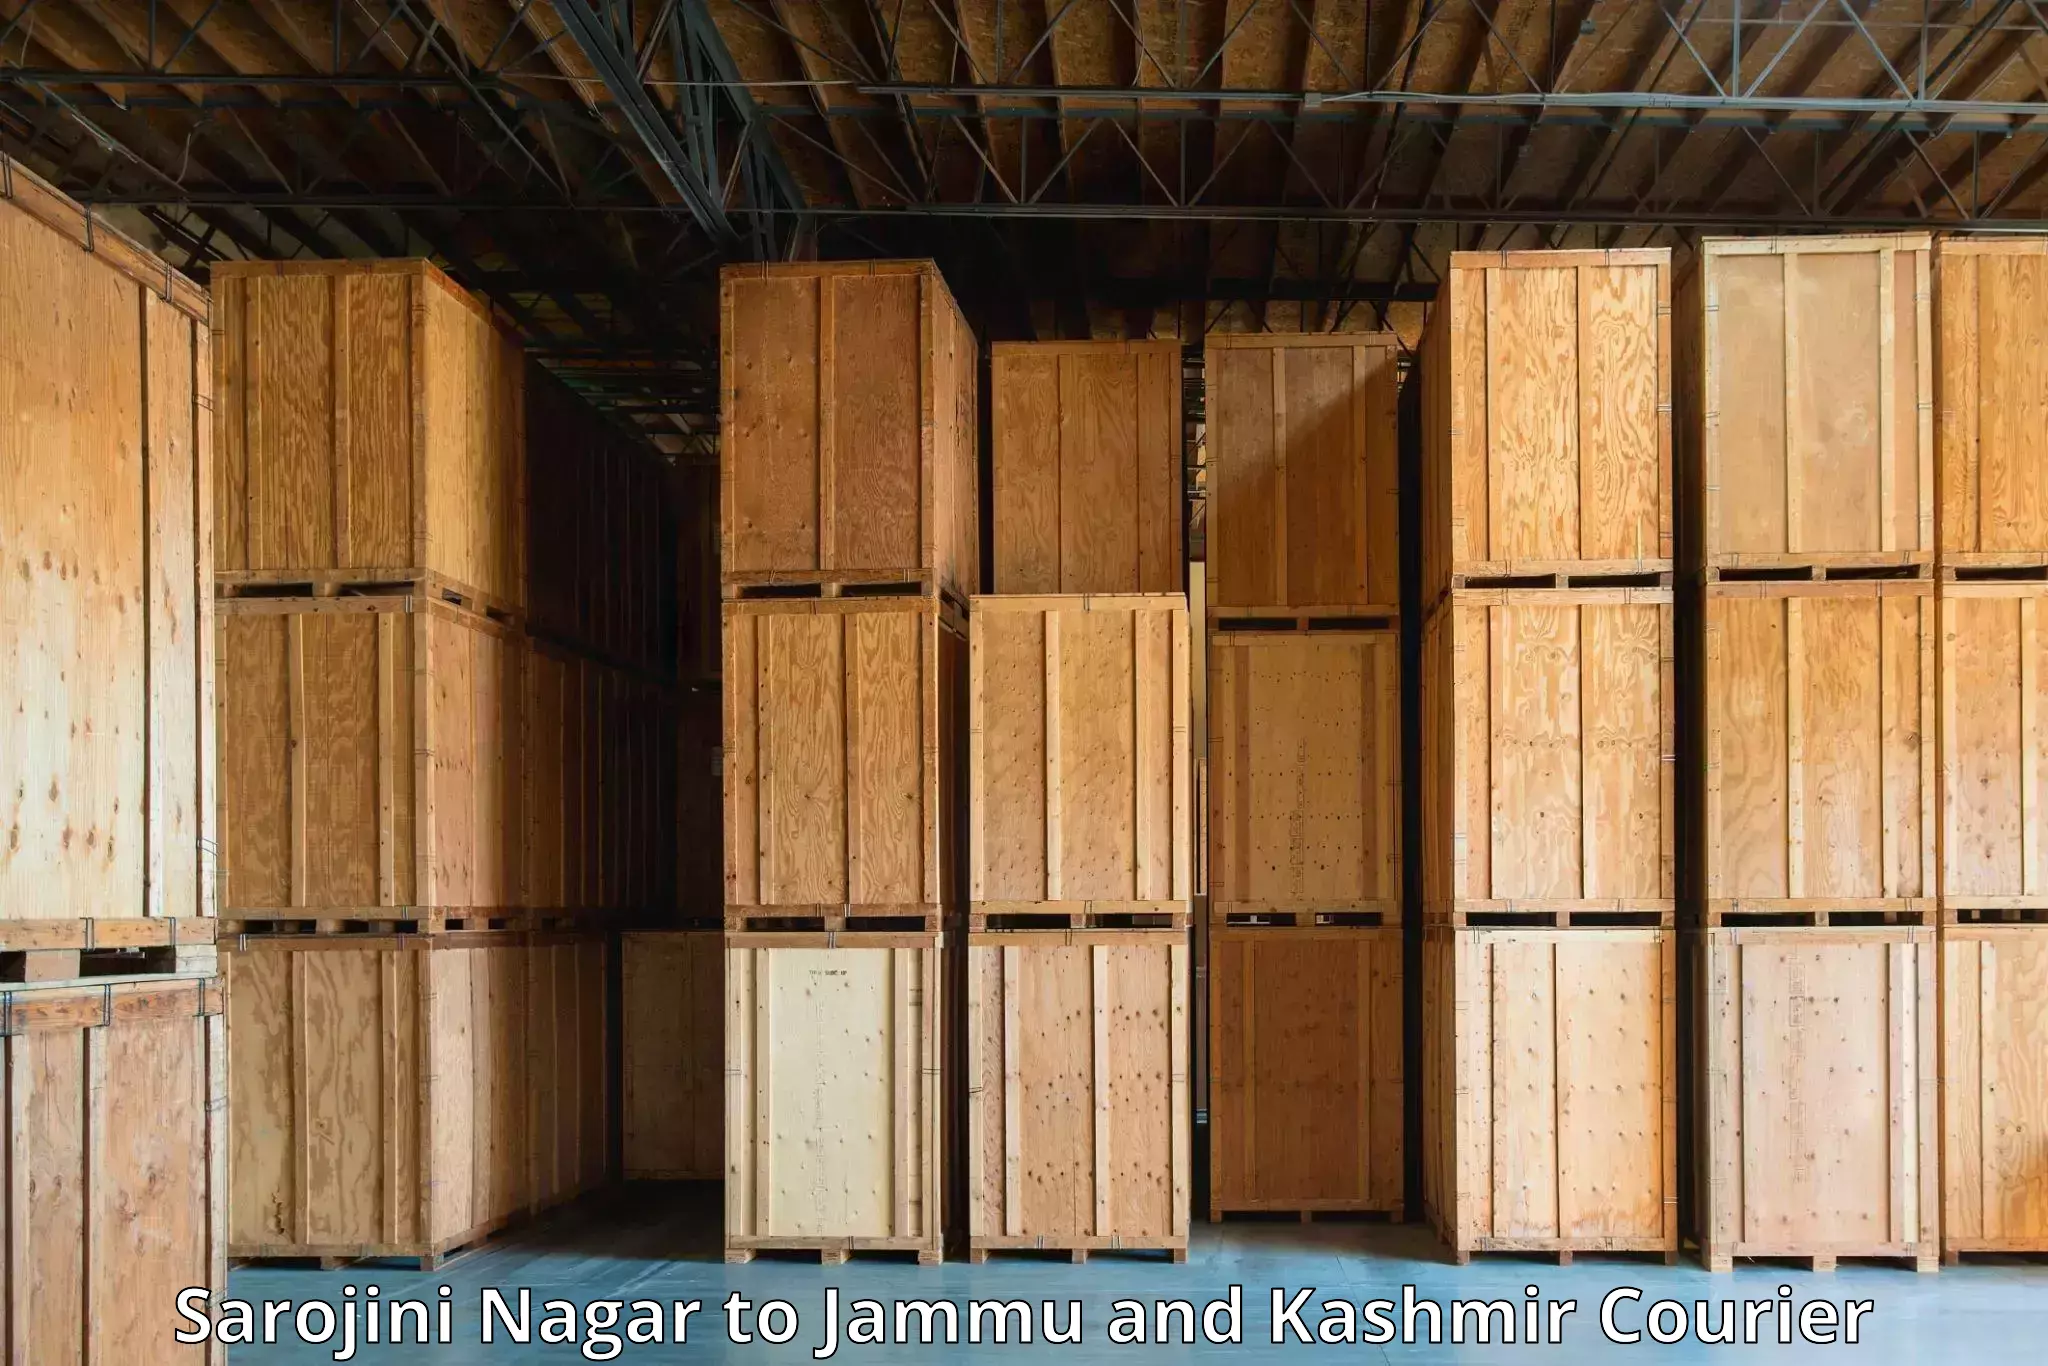 High-priority parcel service Sarojini Nagar to Jammu and Kashmir